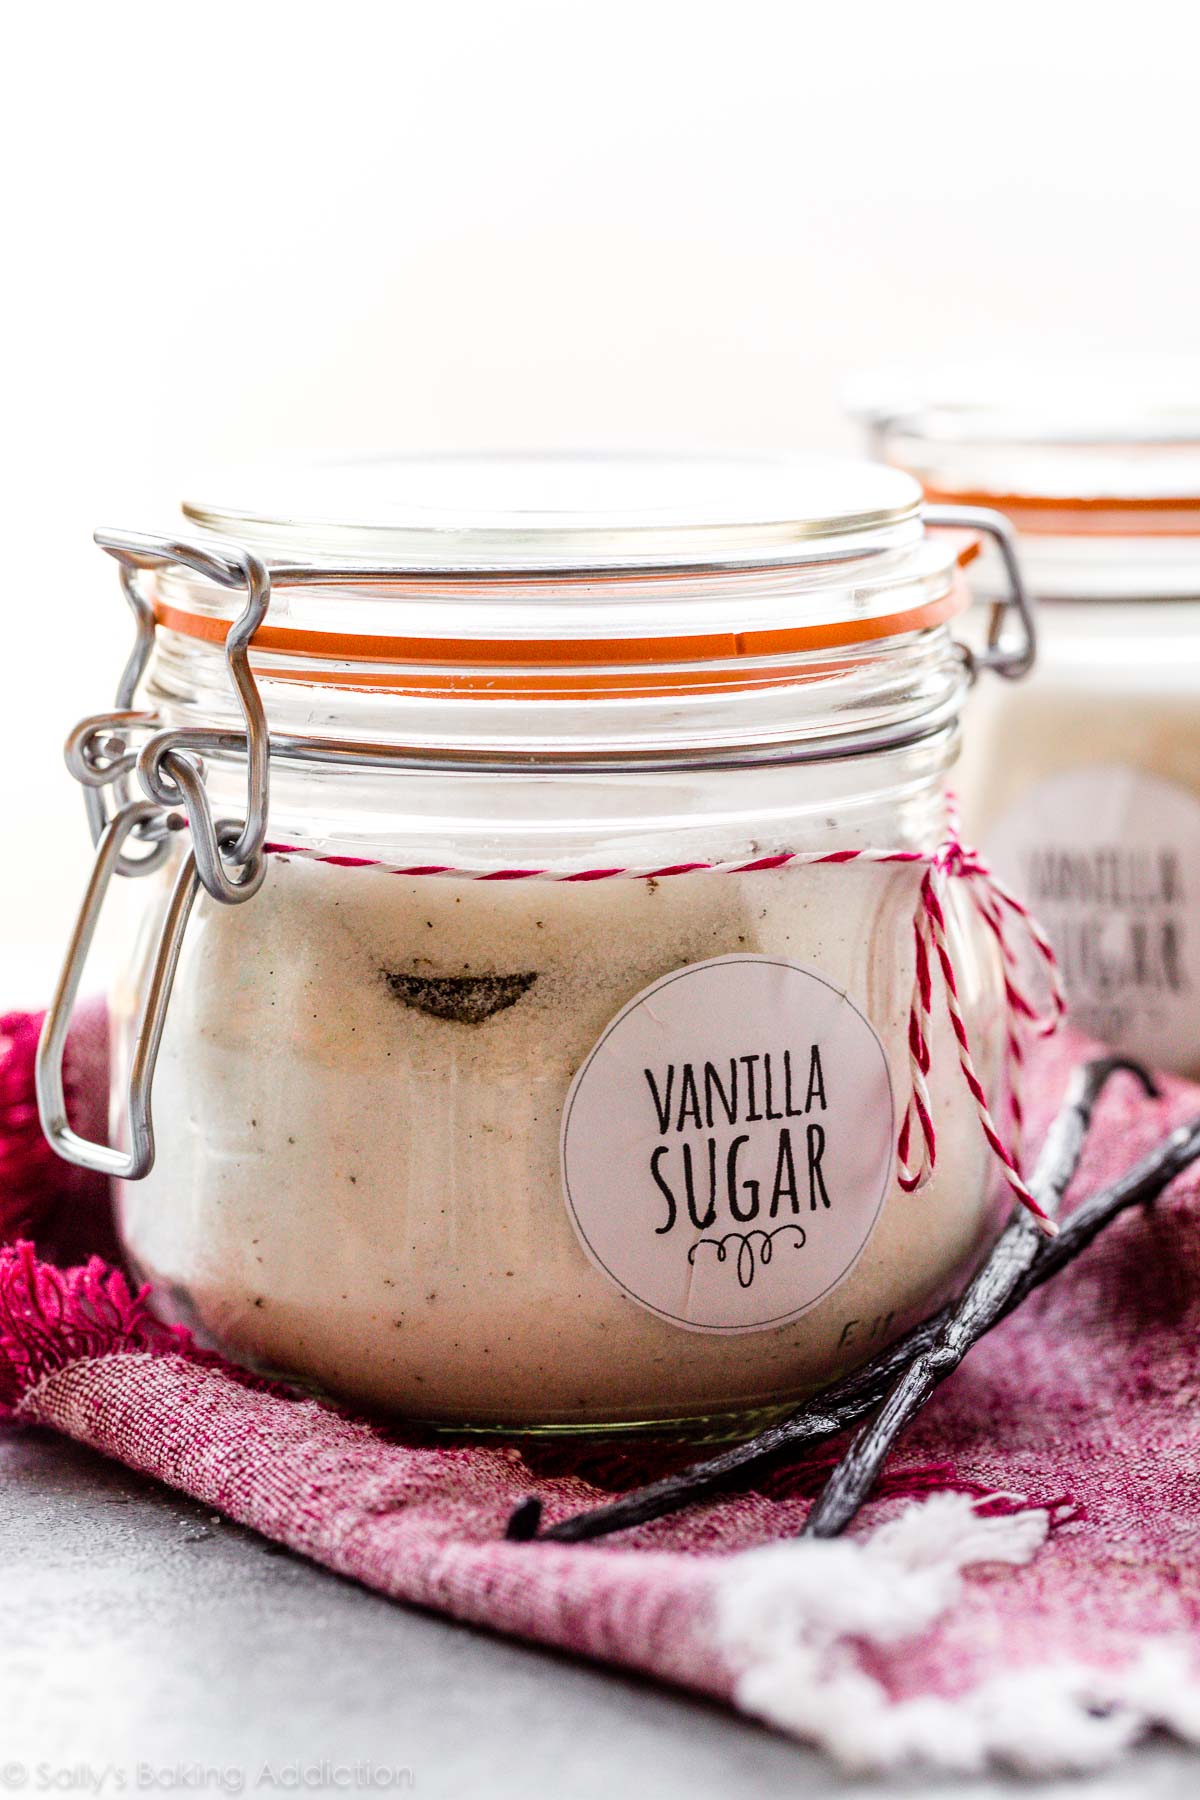 sucre vanillé maison dans un bocal avec des gousses de vanille sur le côté